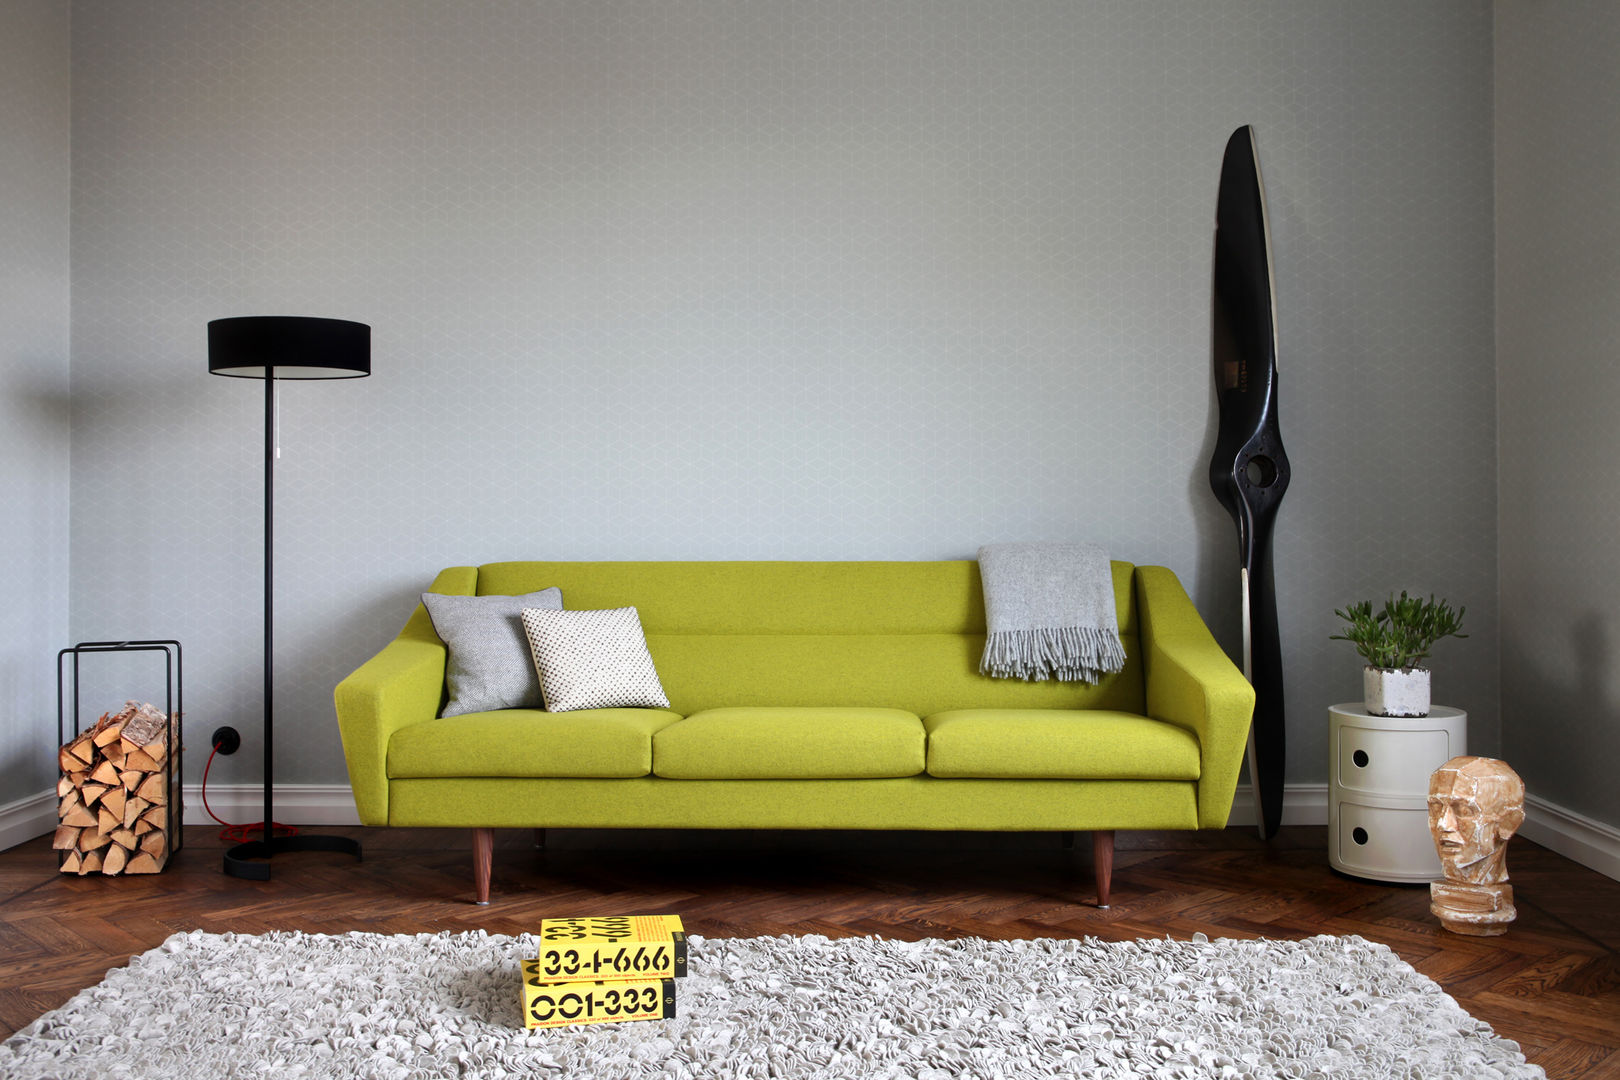 3-Sitzer Couch im Retro-Look in gelb Baltic Design Shop Moderne Wohnzimmer Sofa,Sofa retro,sofa gelb,couch retro,couch gelb,sofa 3-sitzer,Containerhaus,cooles sofa,gemütliches sofa,Sofas und Sessel